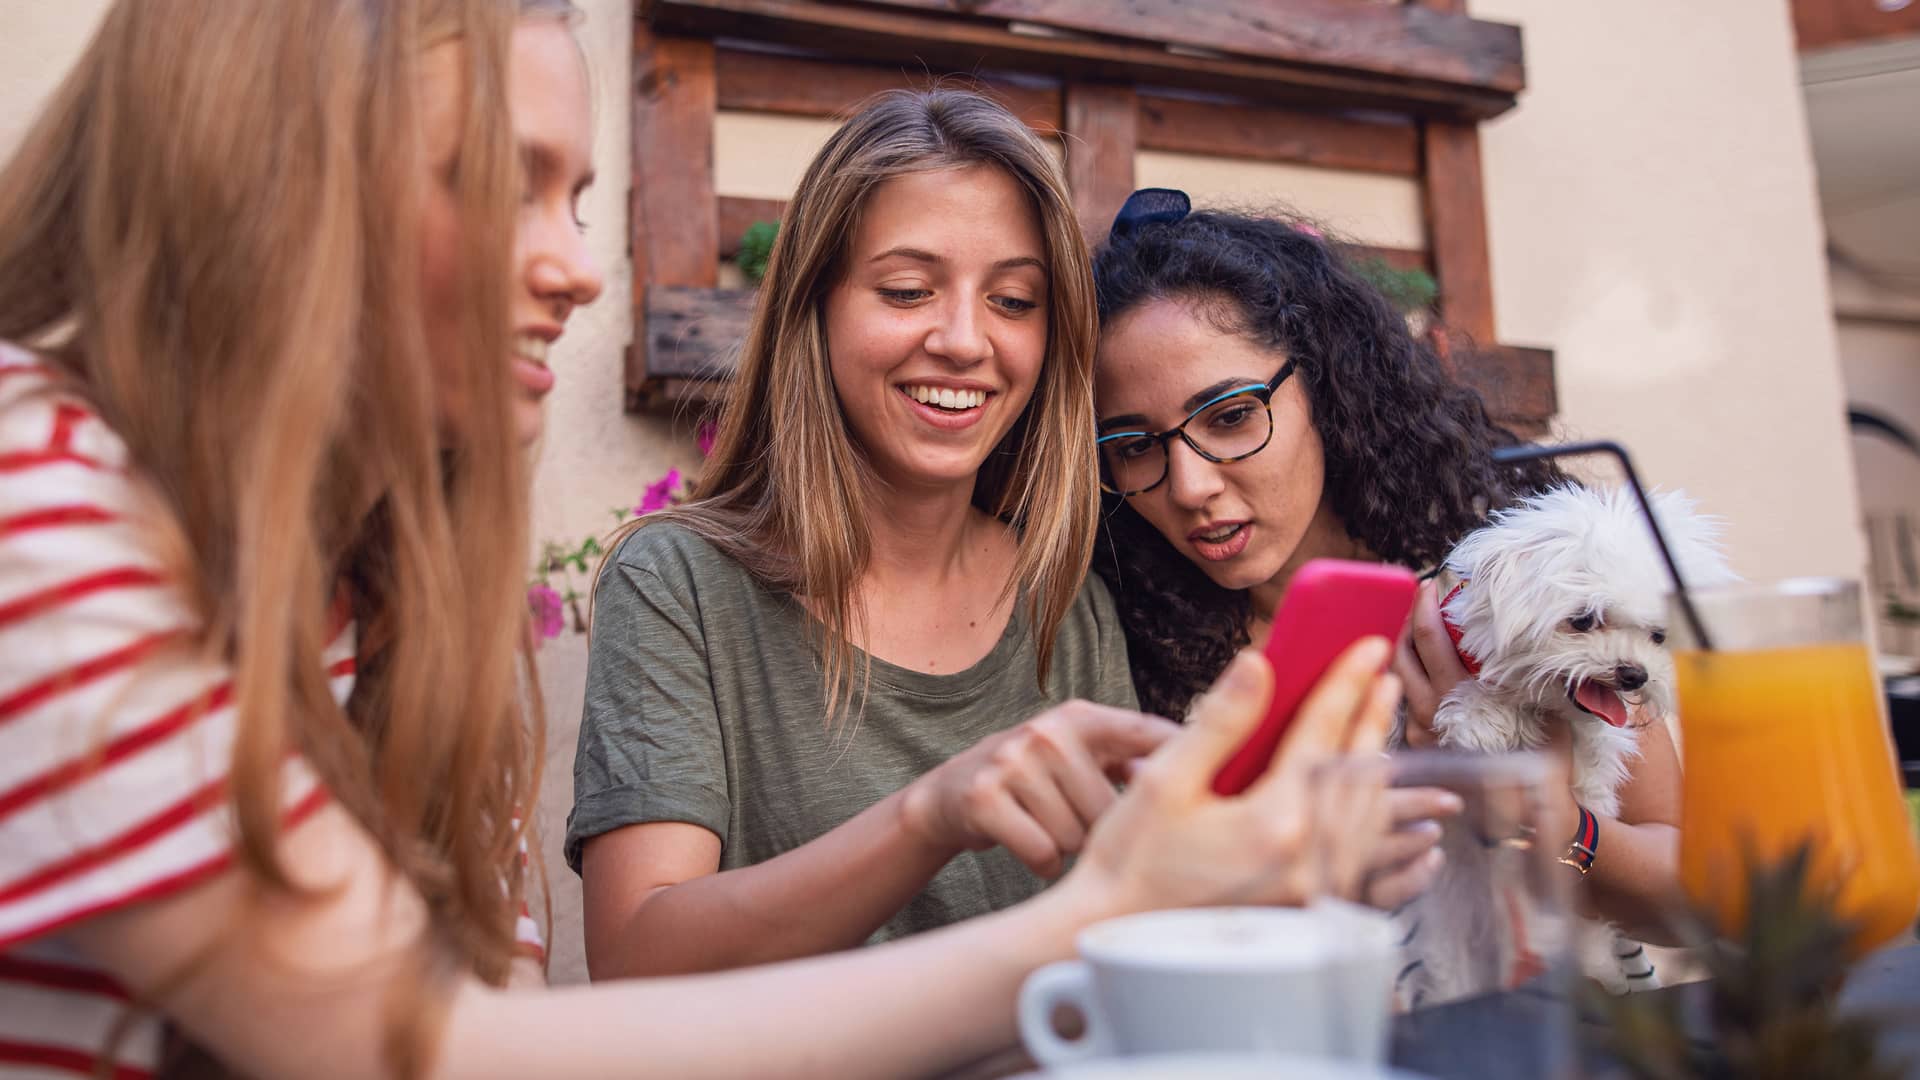 Tres chicas viendo algo en un smartphone representan tarjeta trio de simyo